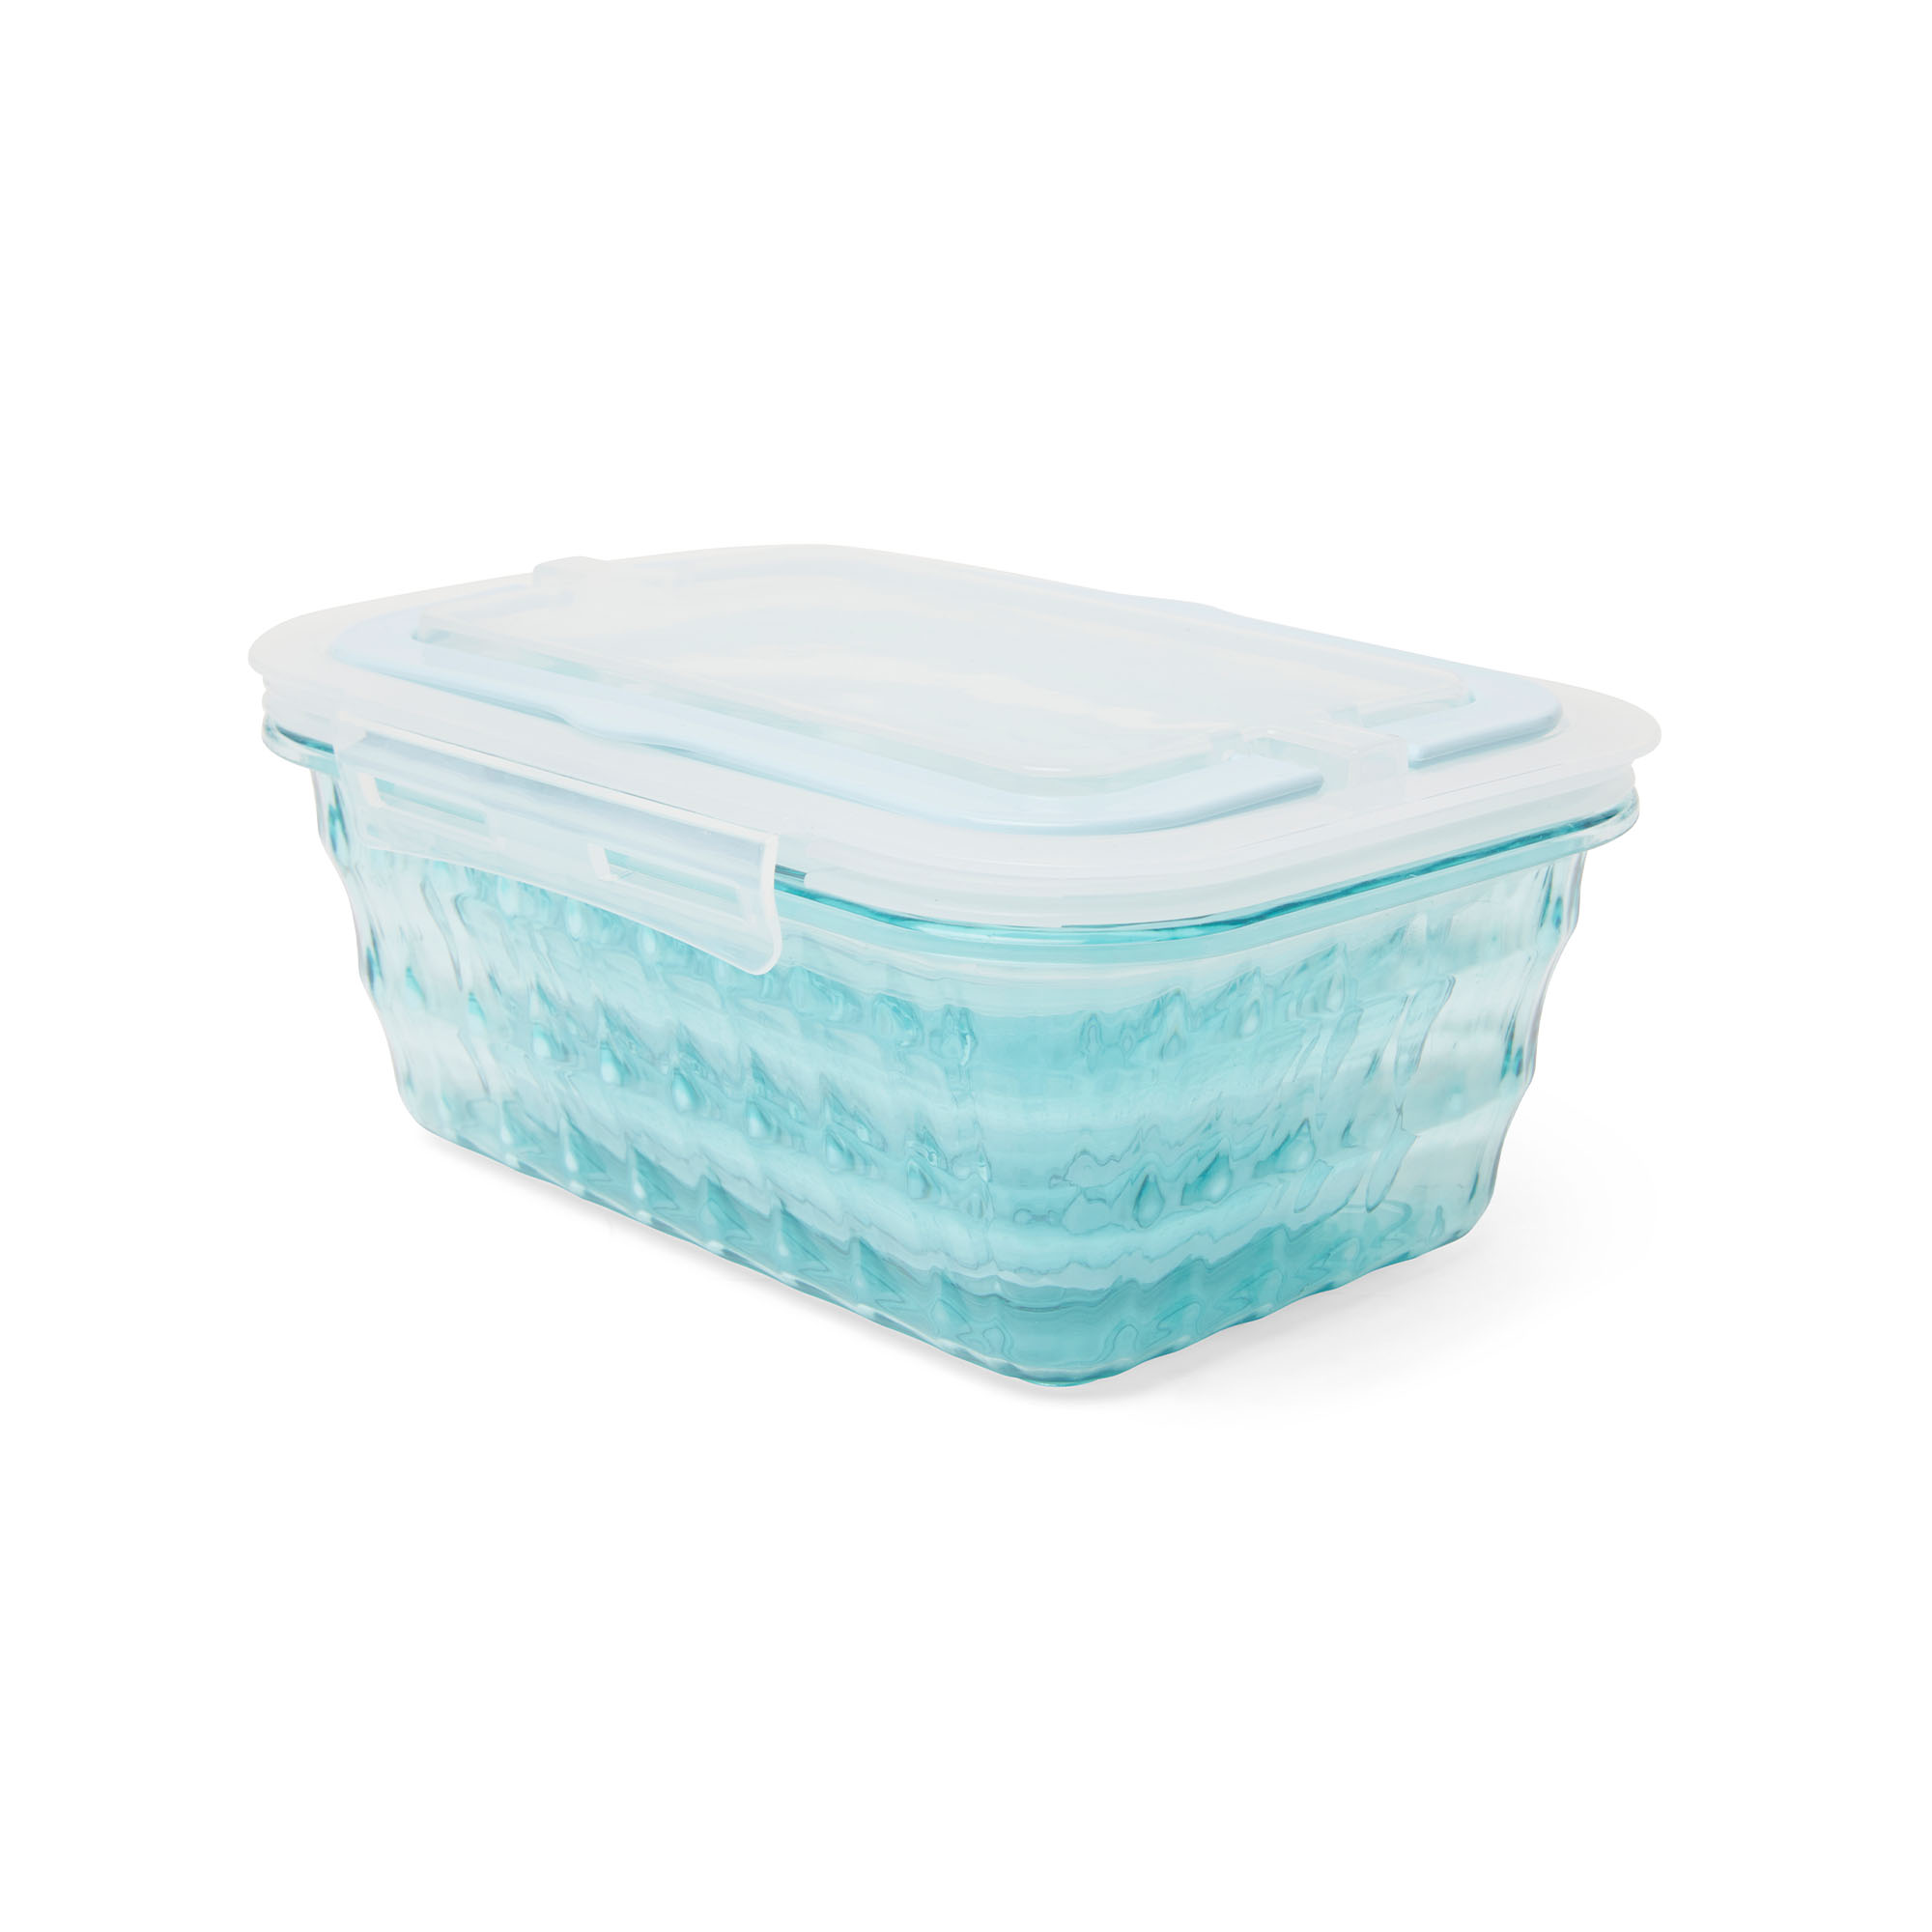 Porta pranzo lunch box in plastica - Set da 3 pz, , large